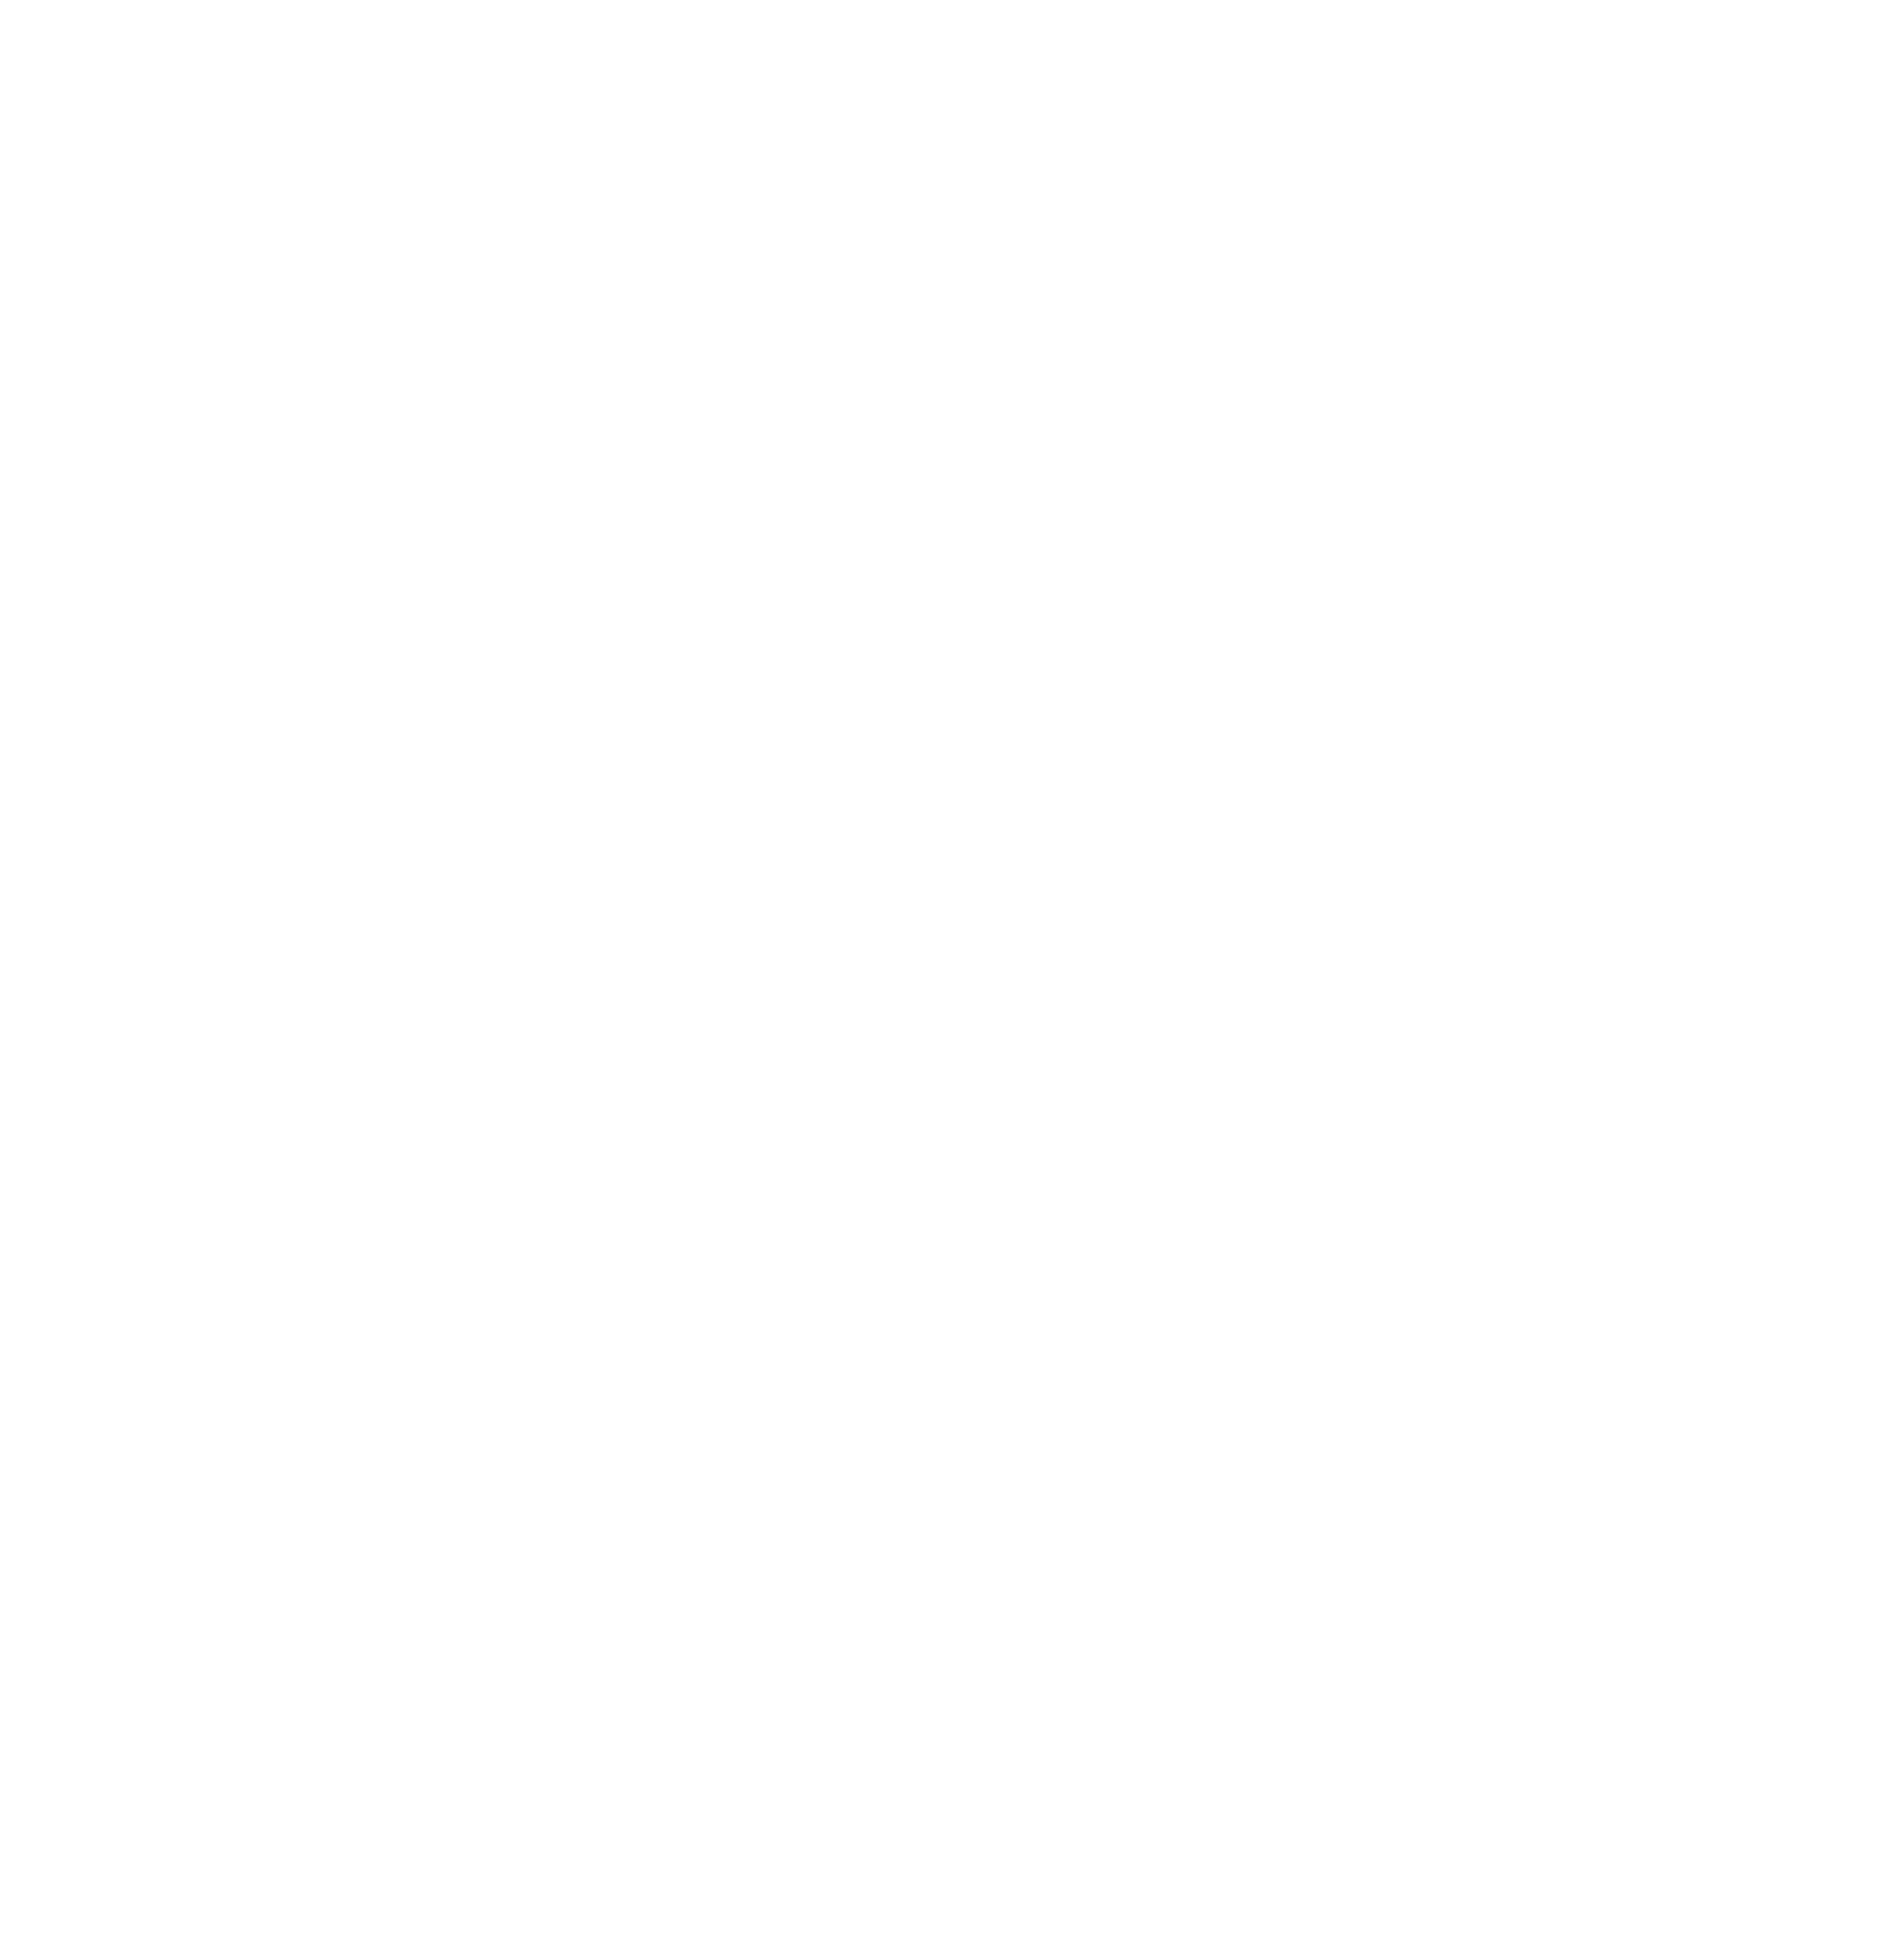 X"